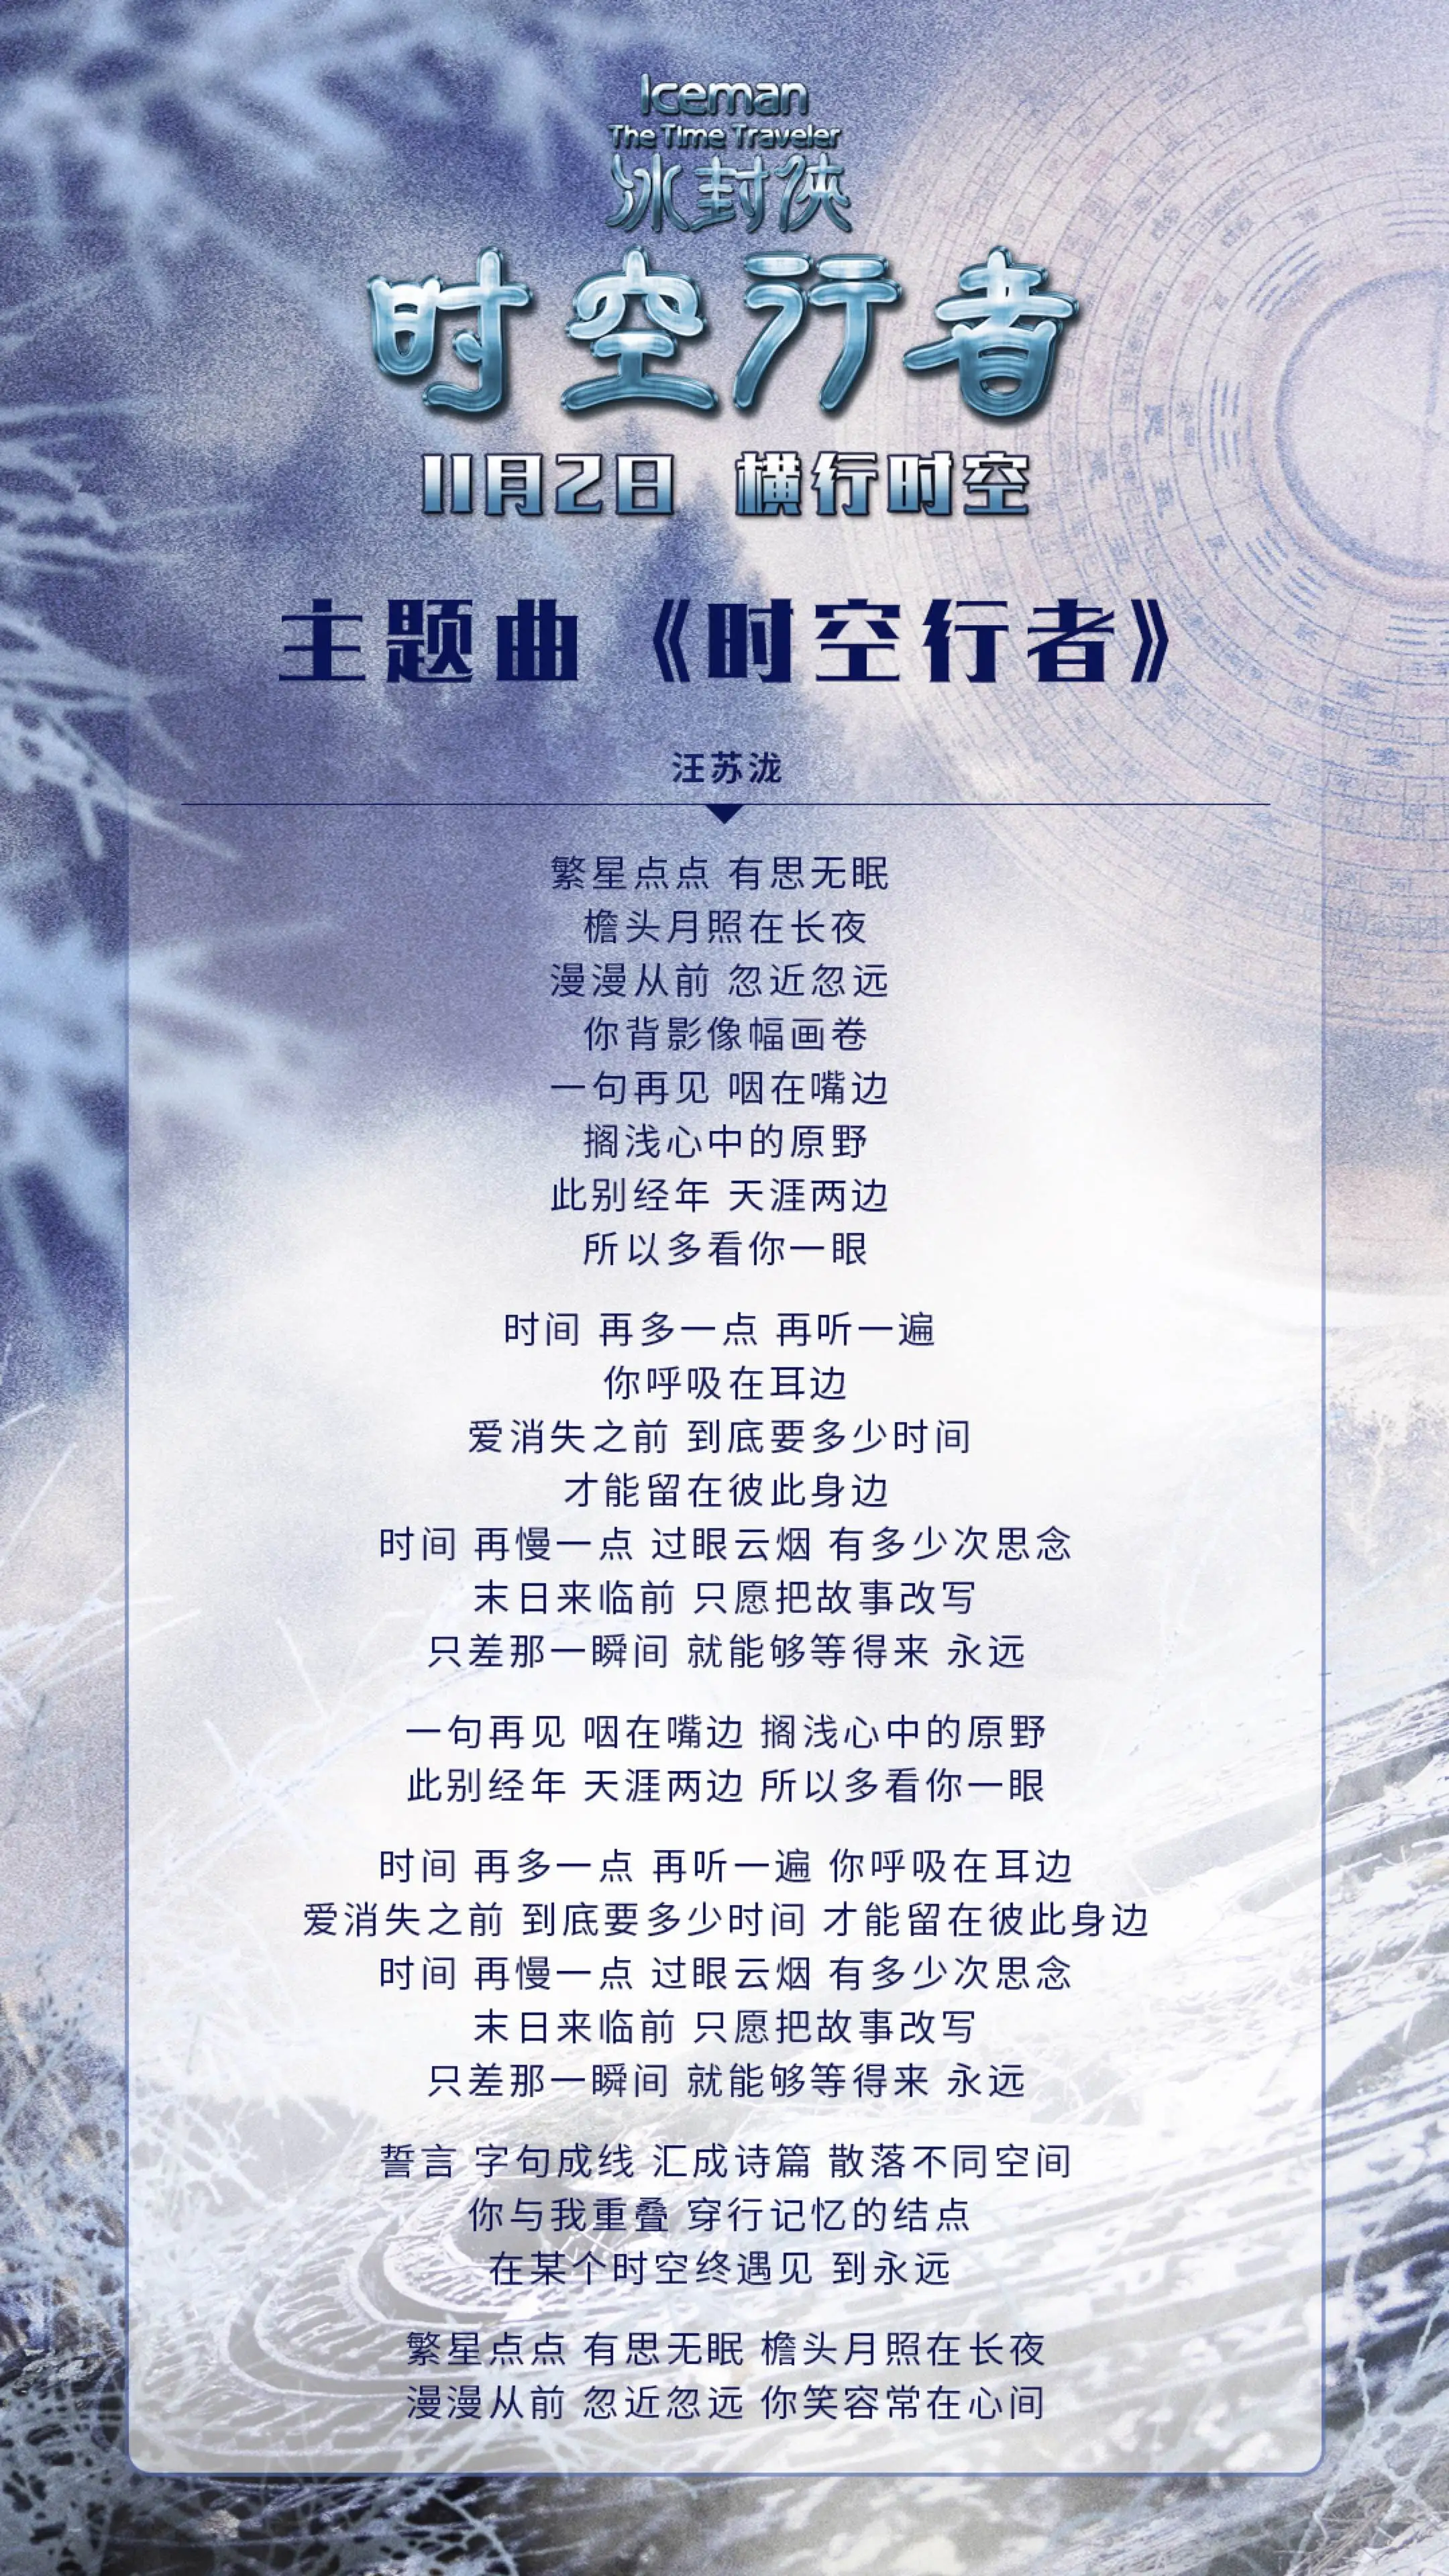 Theme song of the film time traveler - lyrics poster. JPG